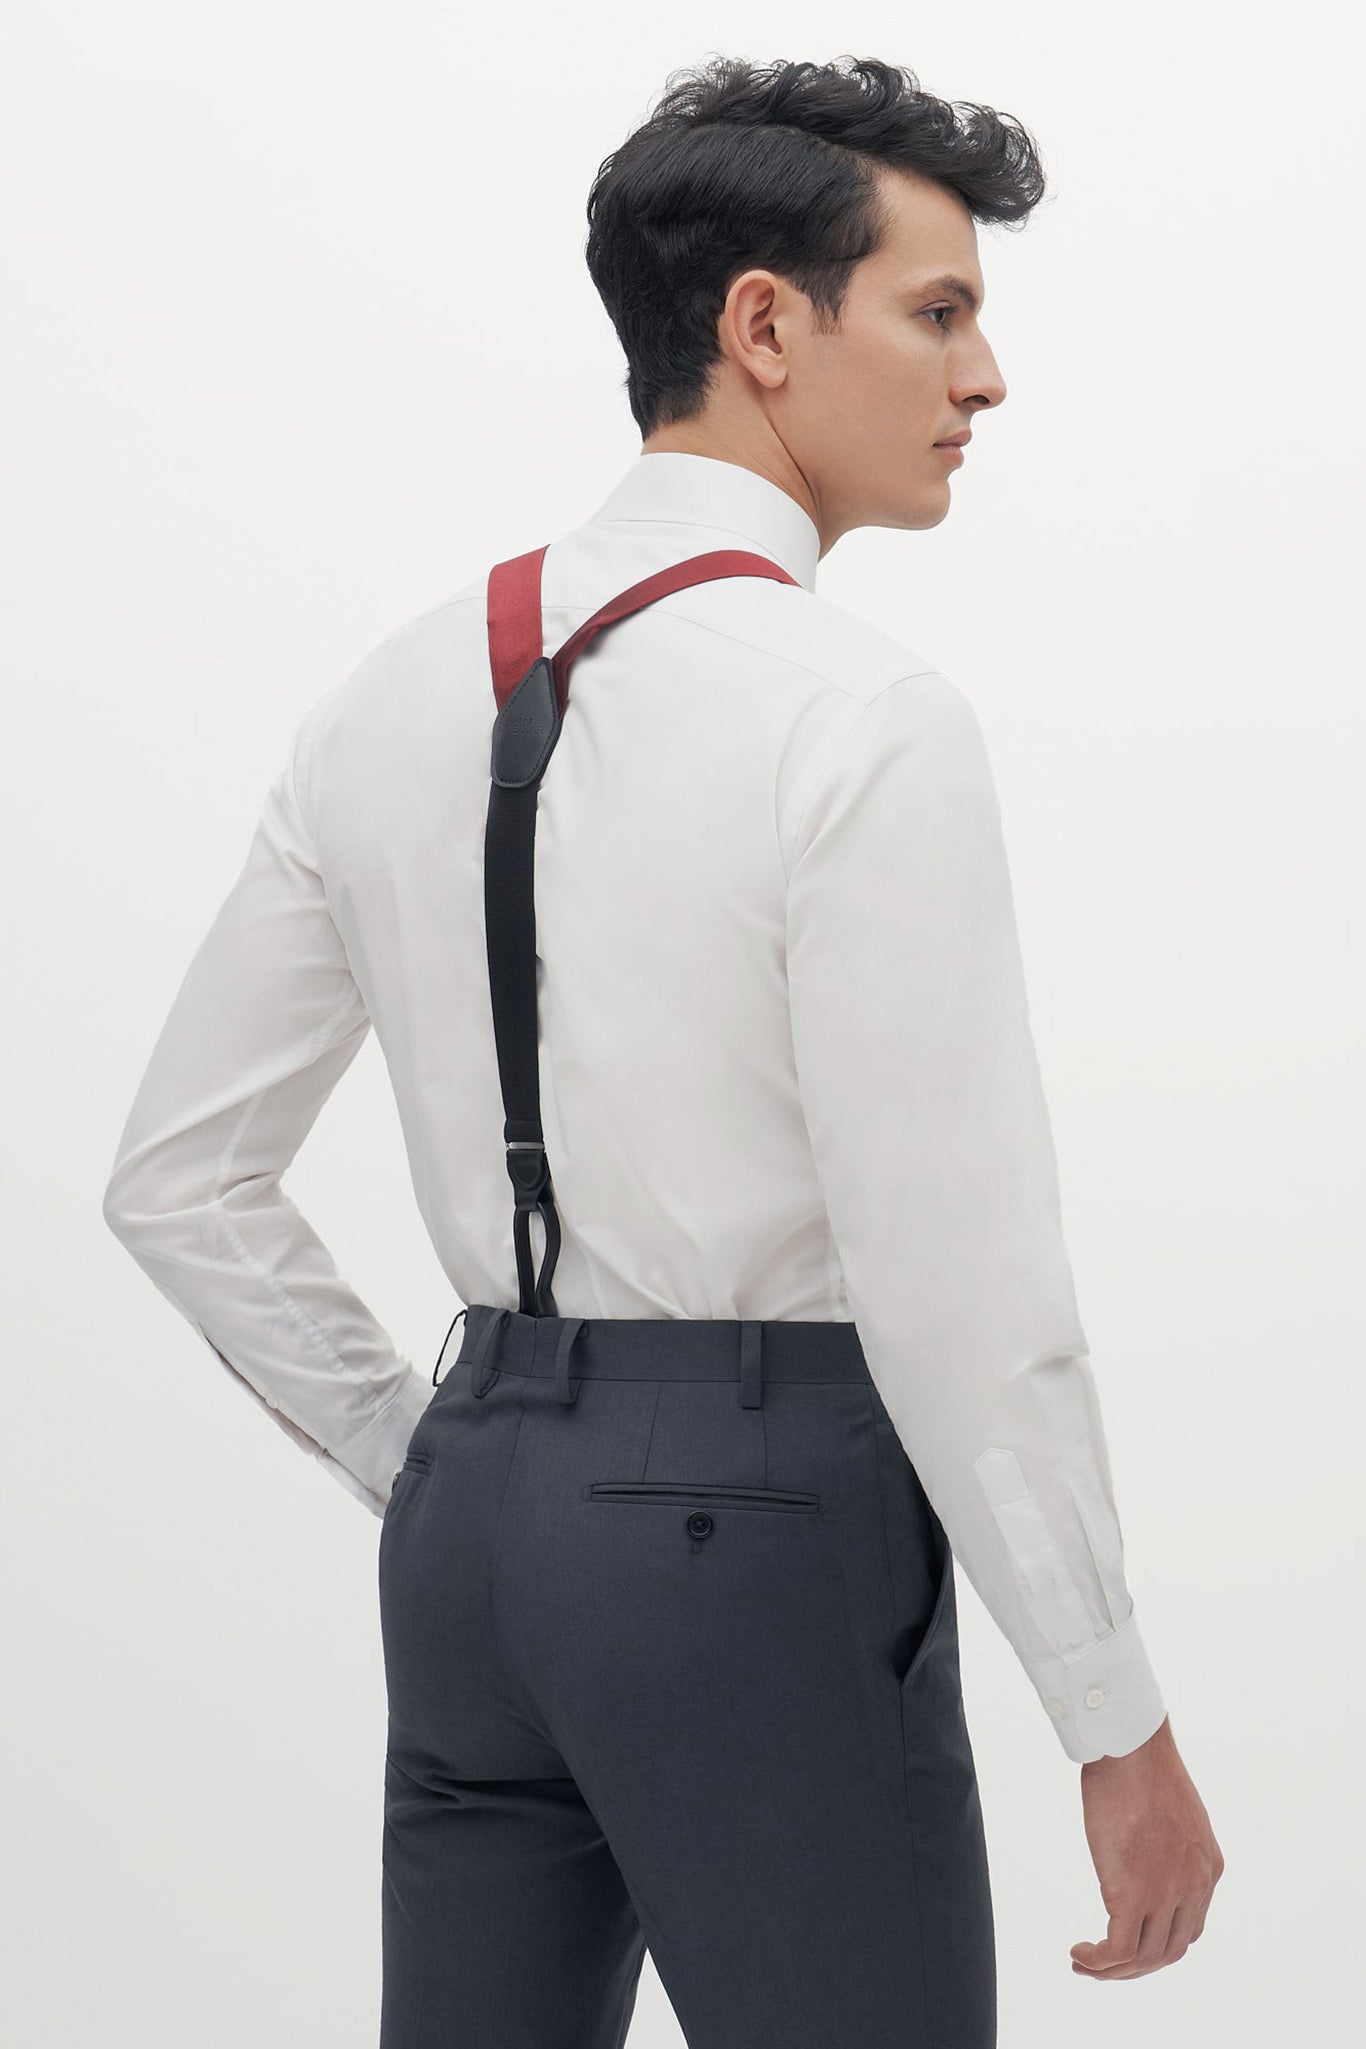 Burgundy Grosgrain Suspenders by SuitShop, back view